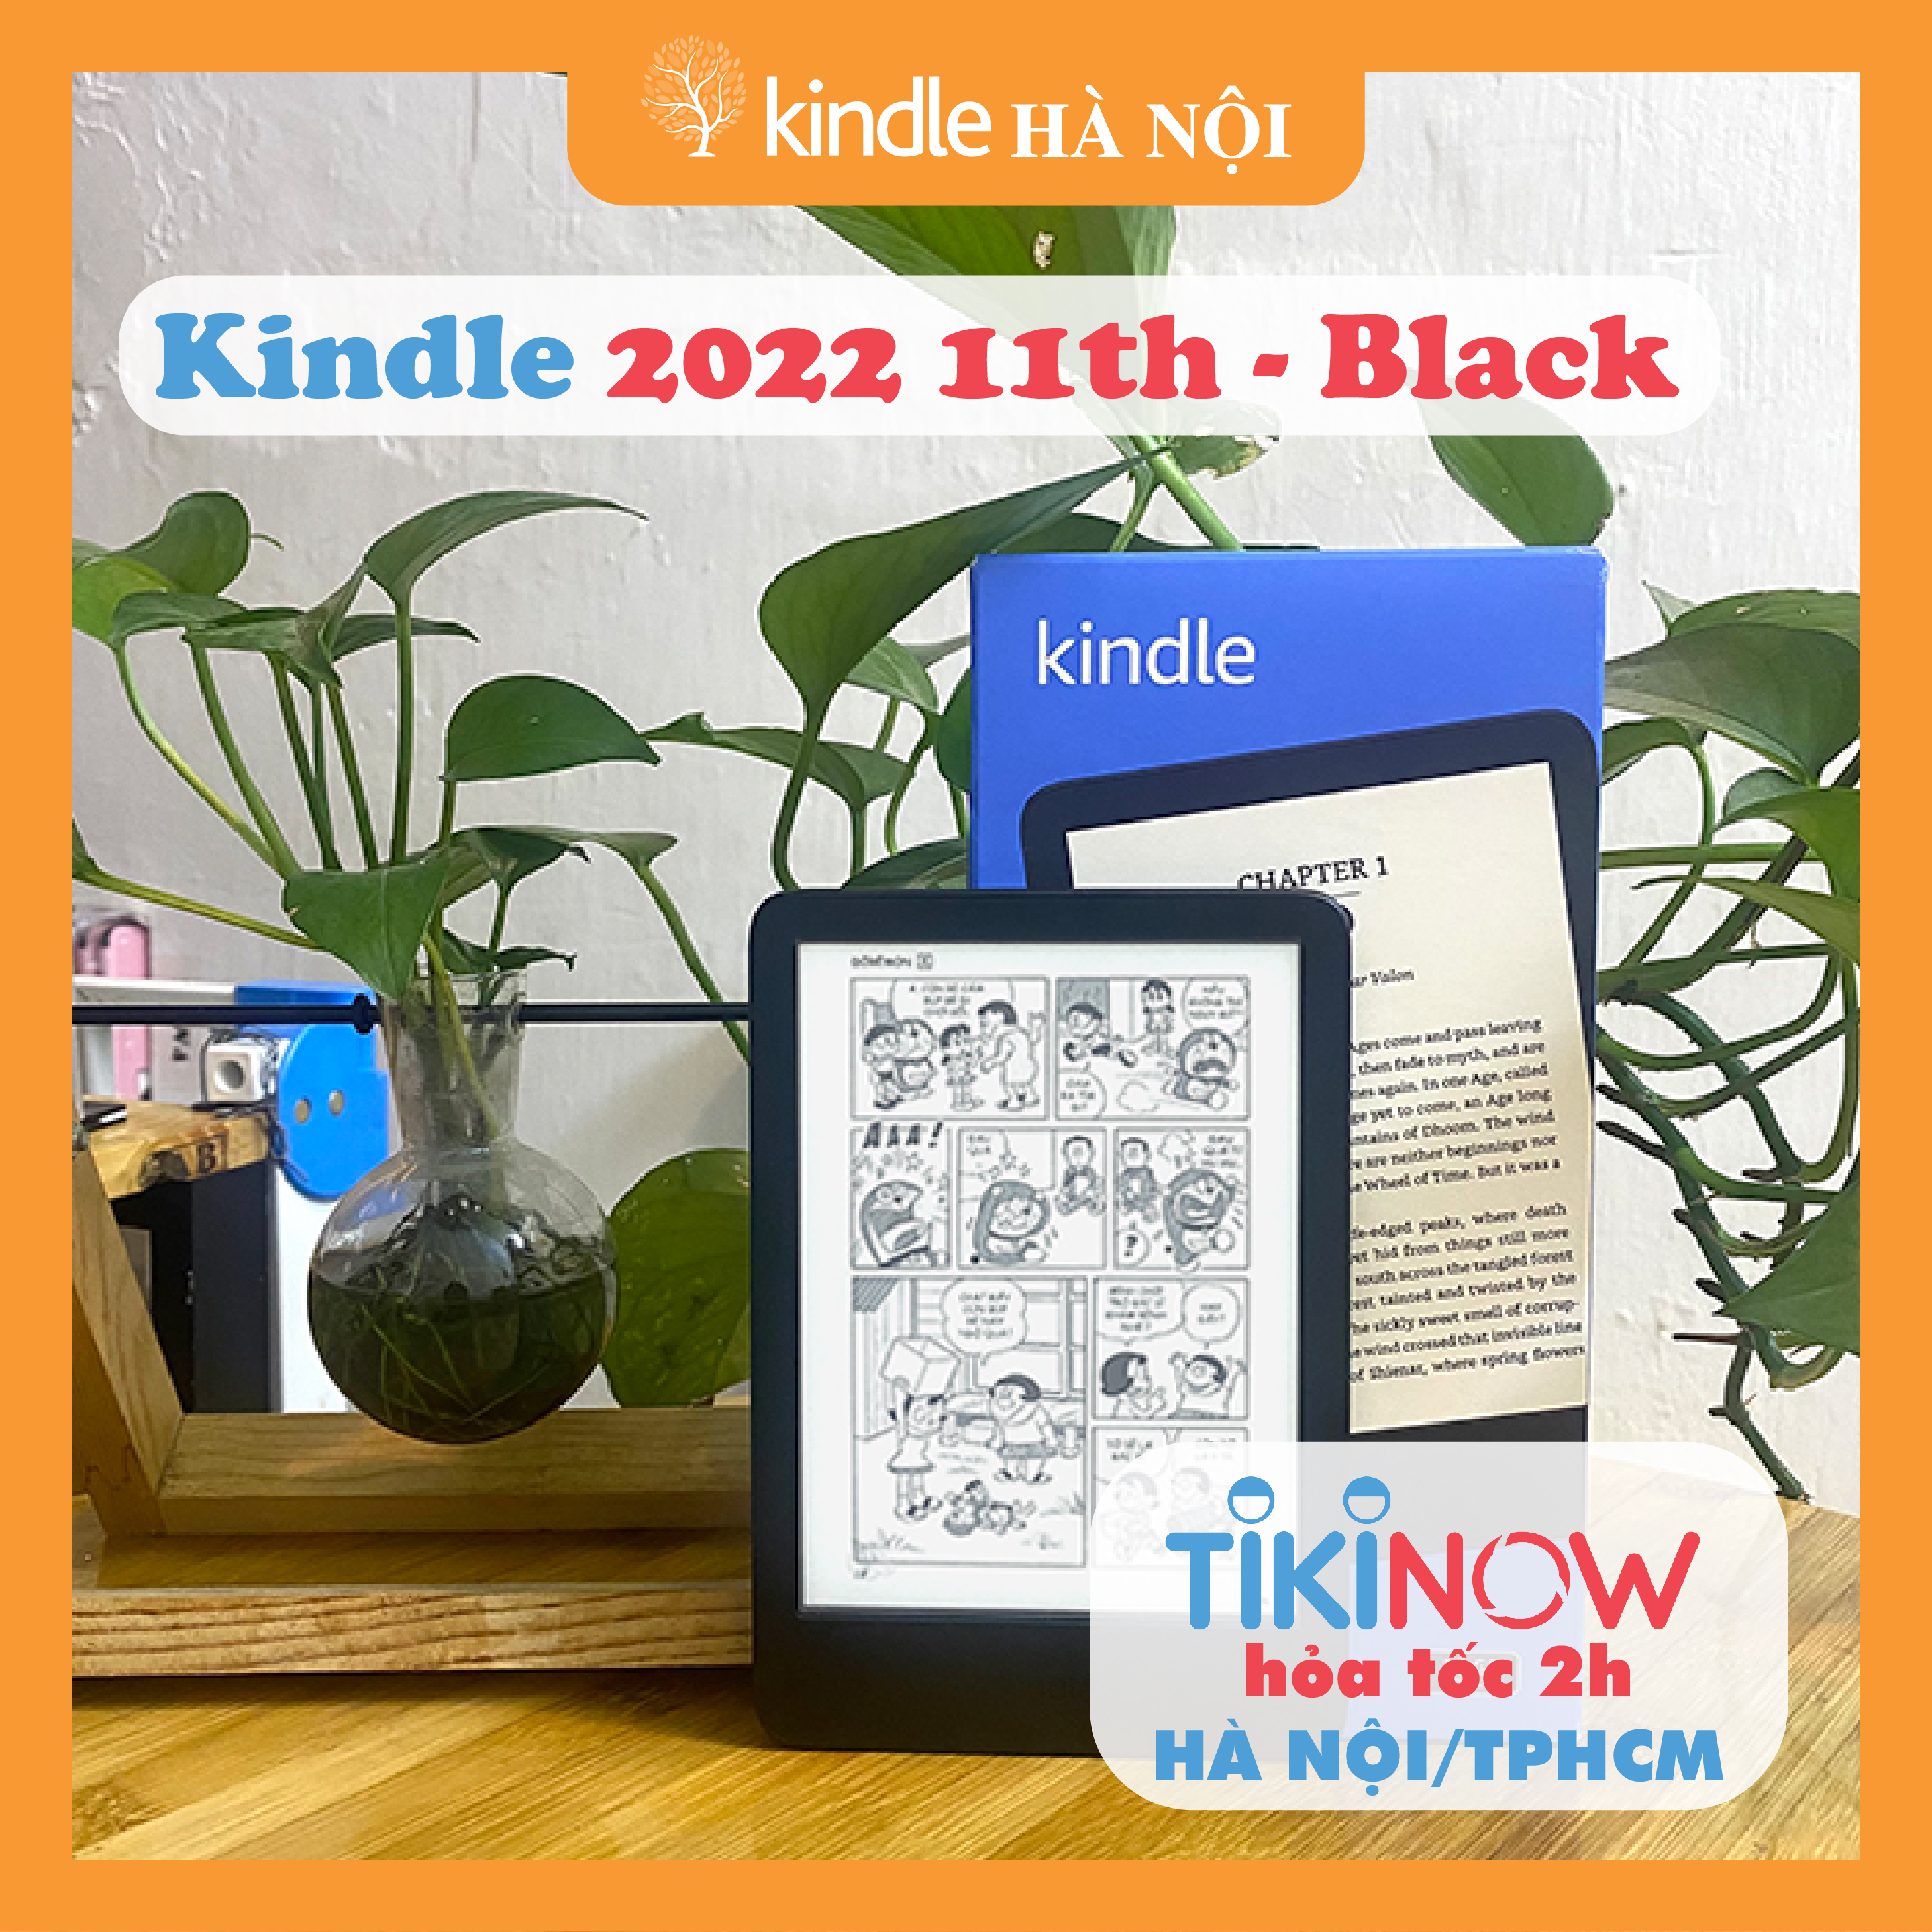 Máy đọc sách Kindle 2022 (11th) - All new kindle 2022 11th màn hình 6inch 300PPI gấp 2 lần độ sắc nét, 16GB bộ nhớ trong với cổng kết nối USB-C - Hàng nhập khẩu